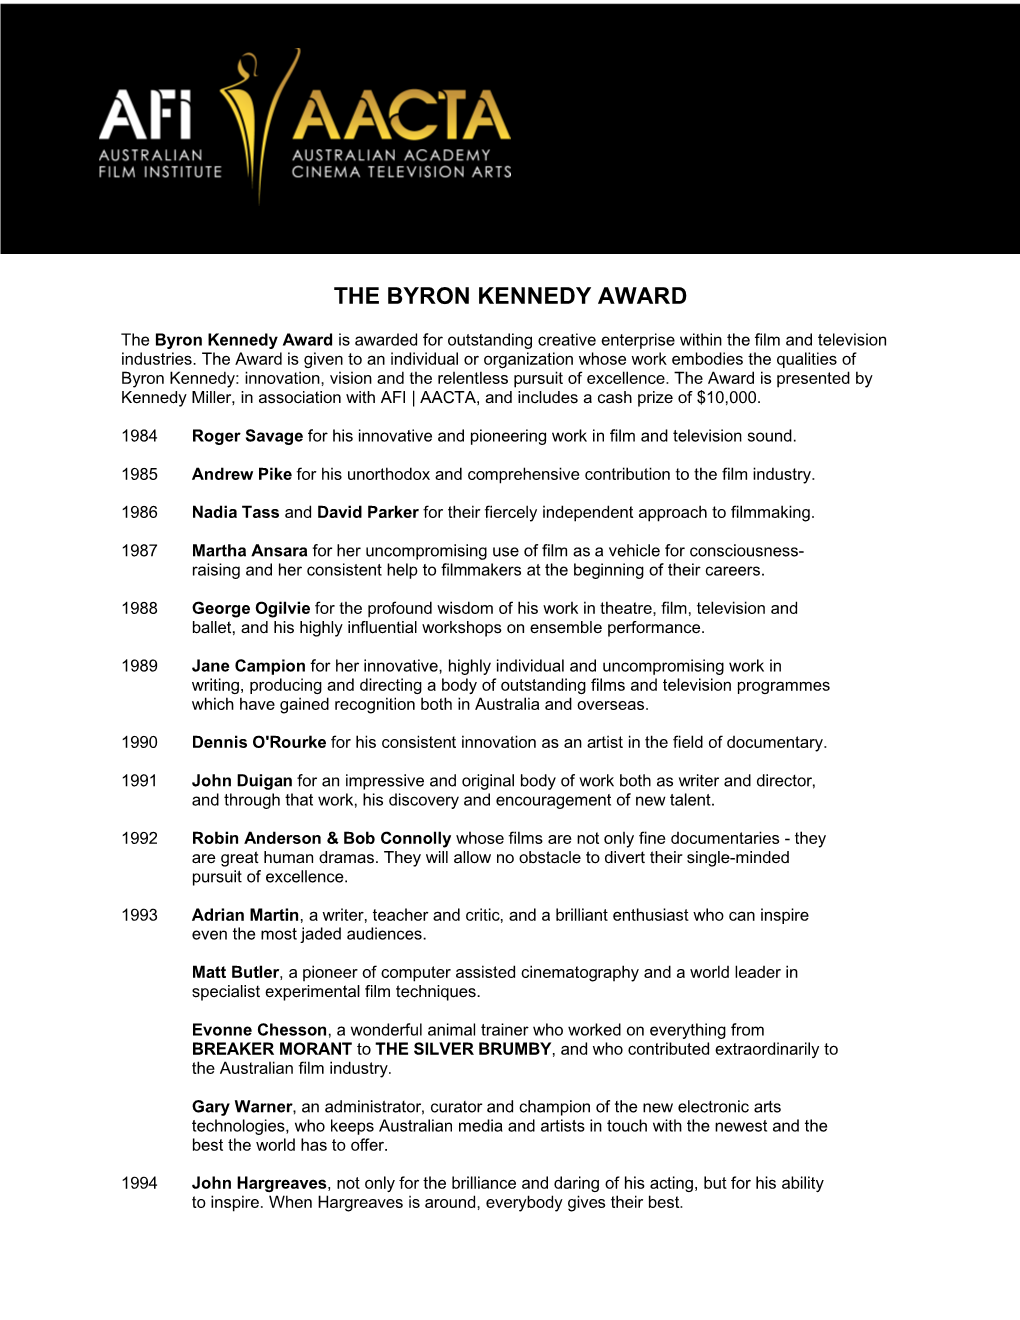 The Byron Kennedy Award